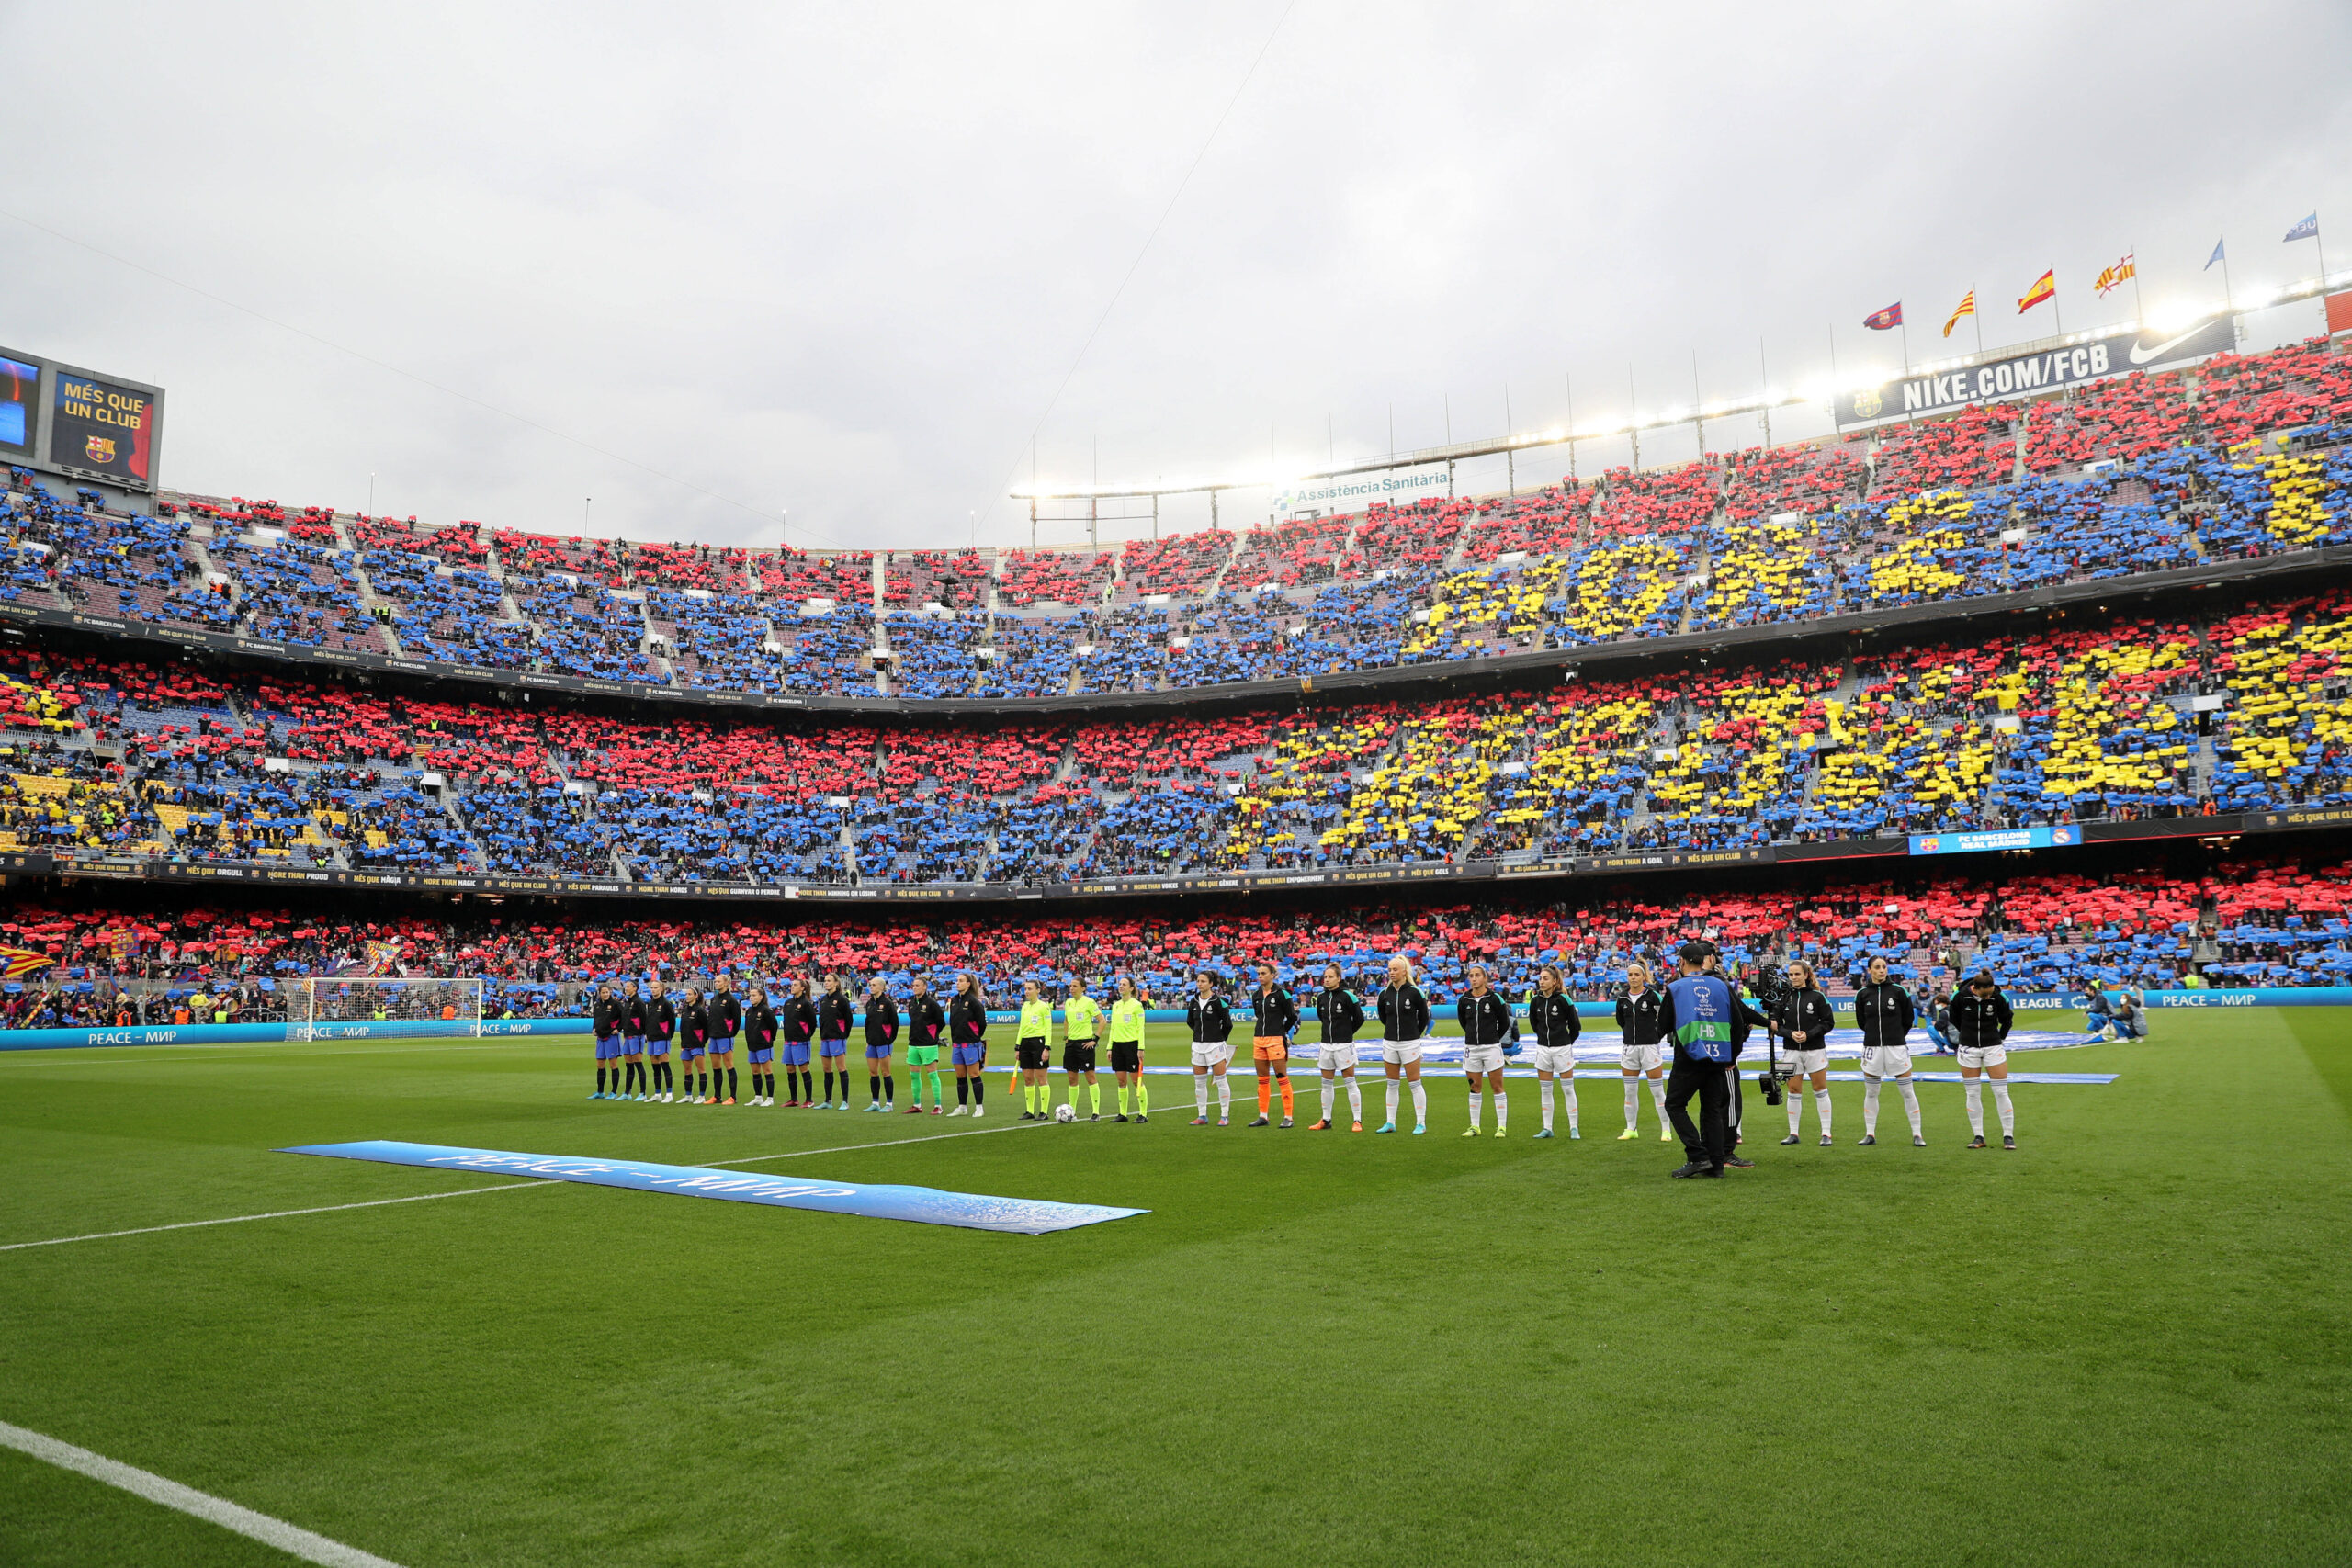 Frauenfußball: Zuschauerweltrekord im Champions League Viertelfinal zwischen Real Madrid und dem FC Barcelona